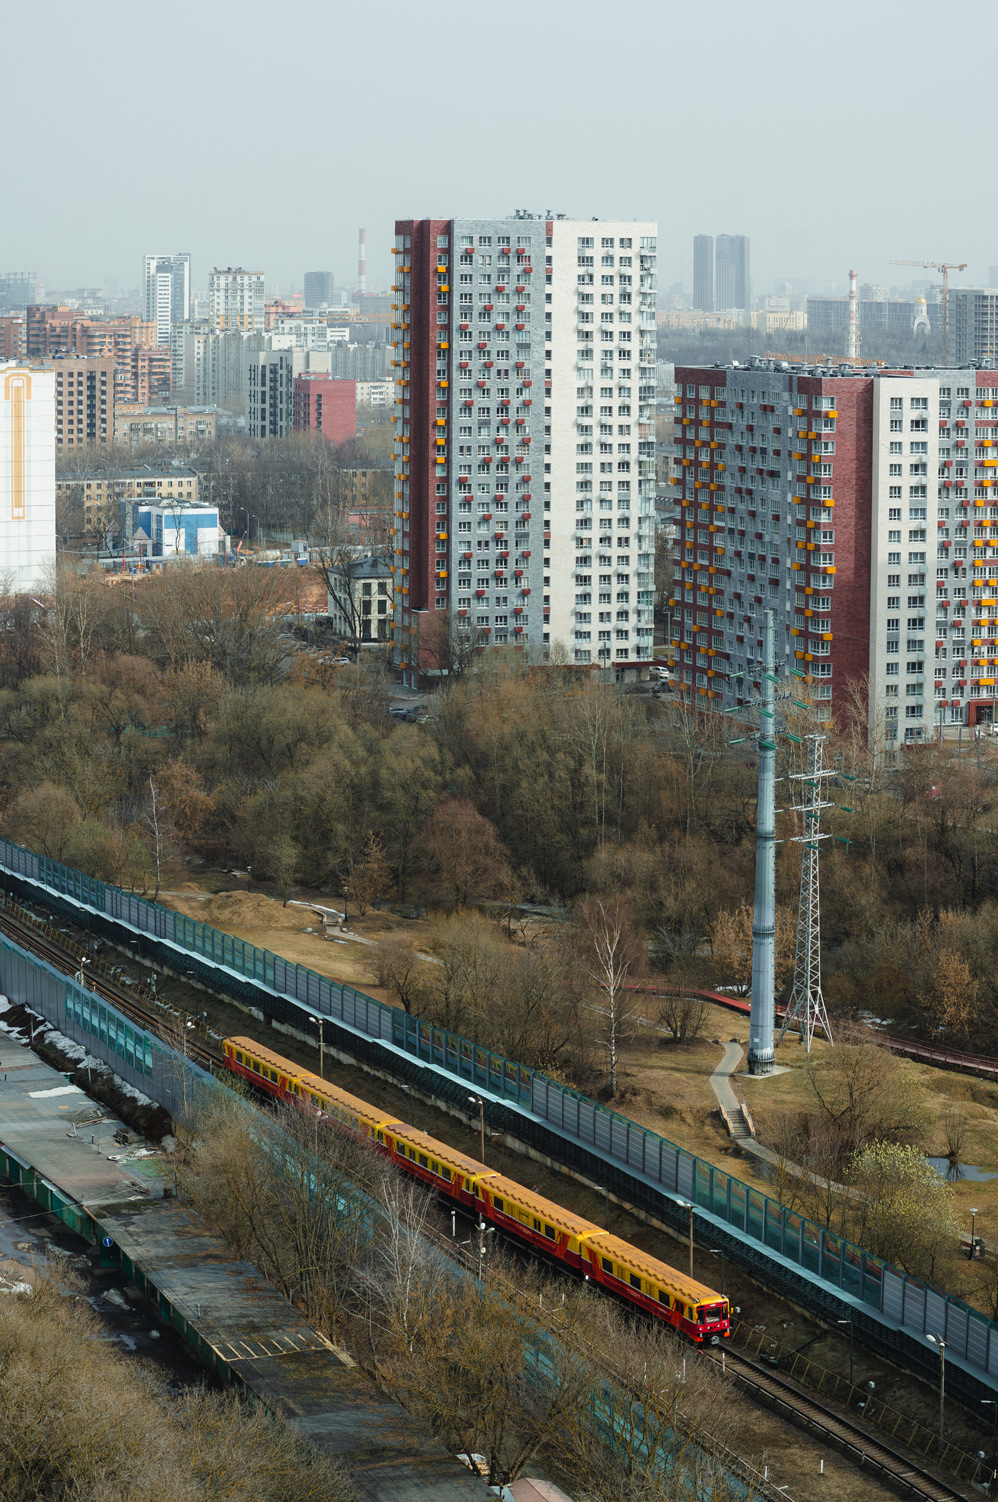 Moscova — Metro — [4] Filyovskaya Line; Moscova — Views from a height